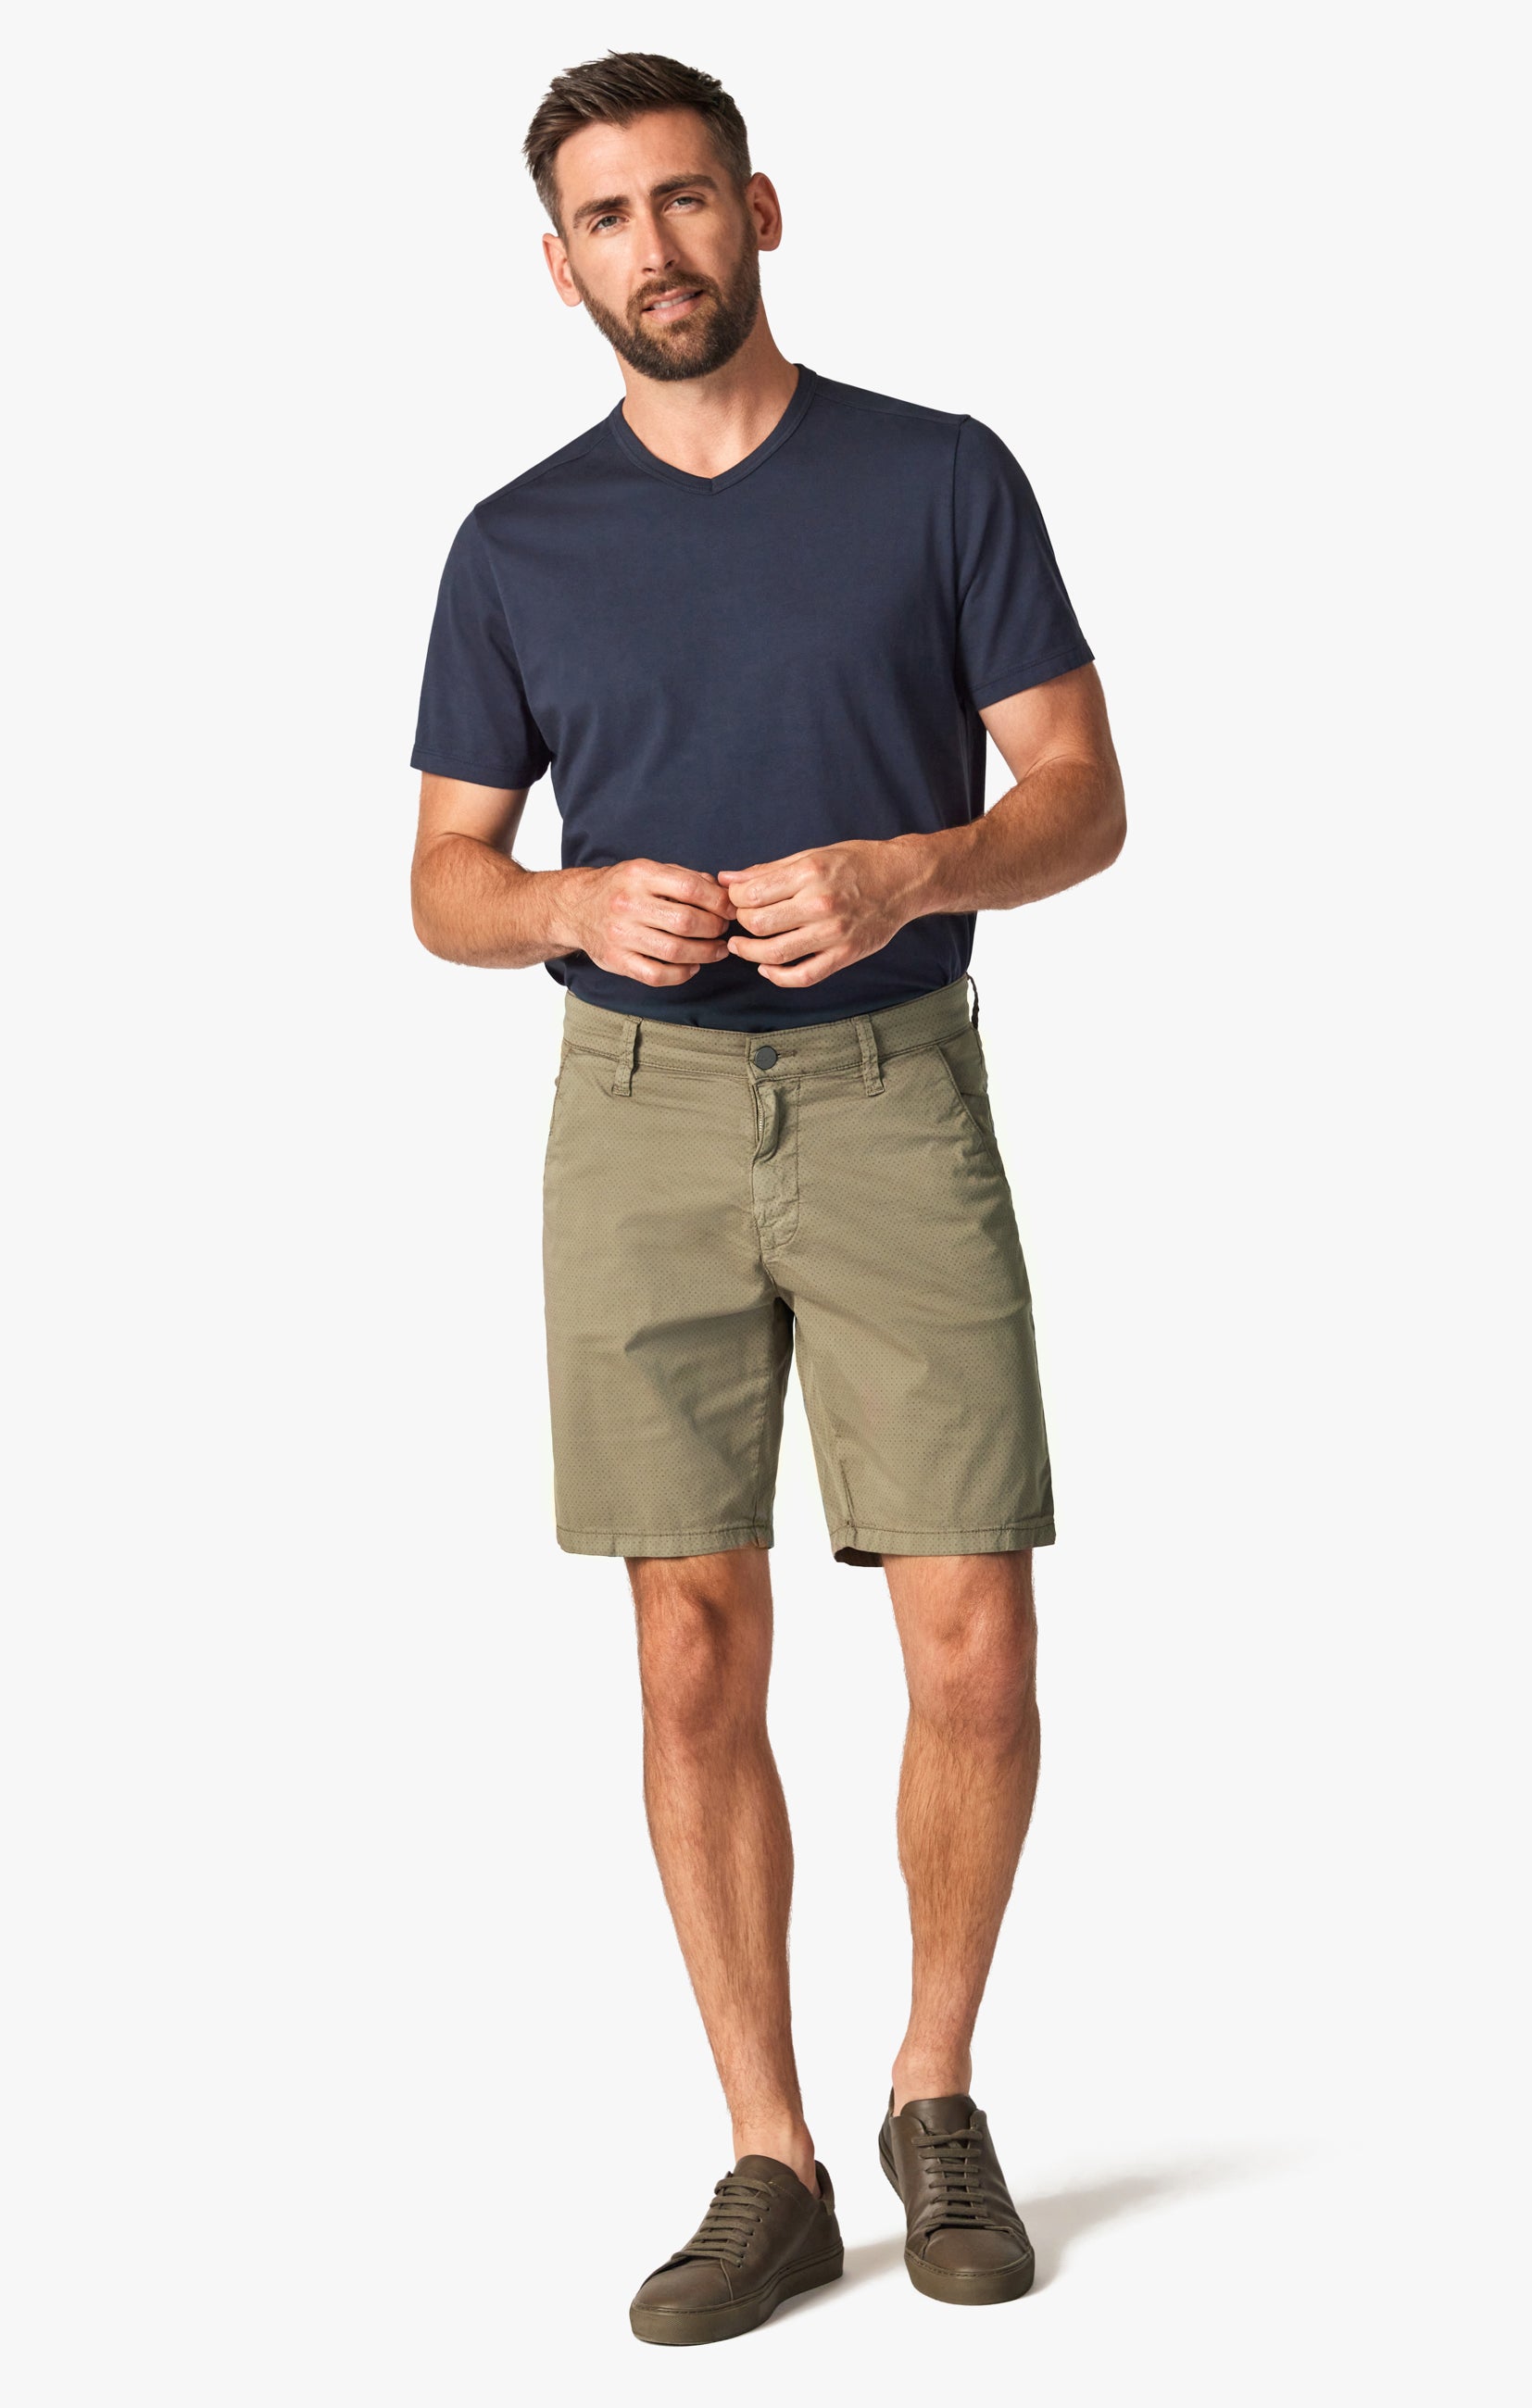 Arizona Slim Shorts in Dusty Olive Dot Image 1